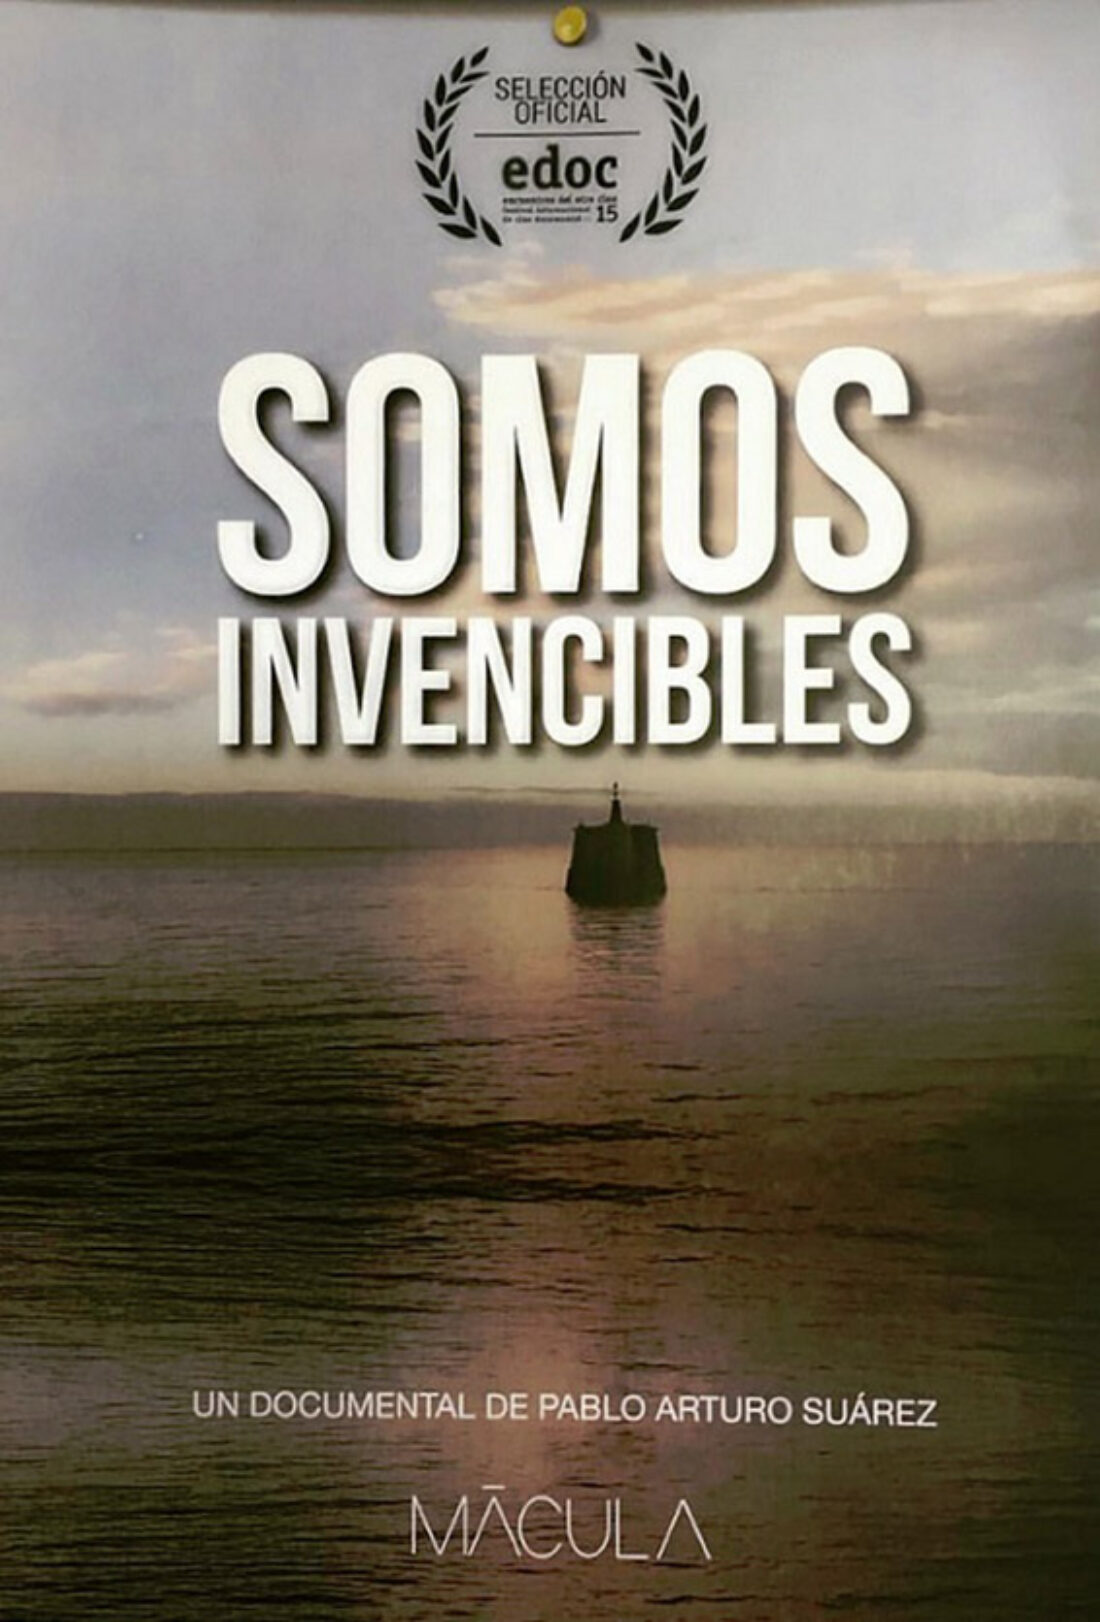 20-s Valencia: Proyección documental “Somos invencibles”